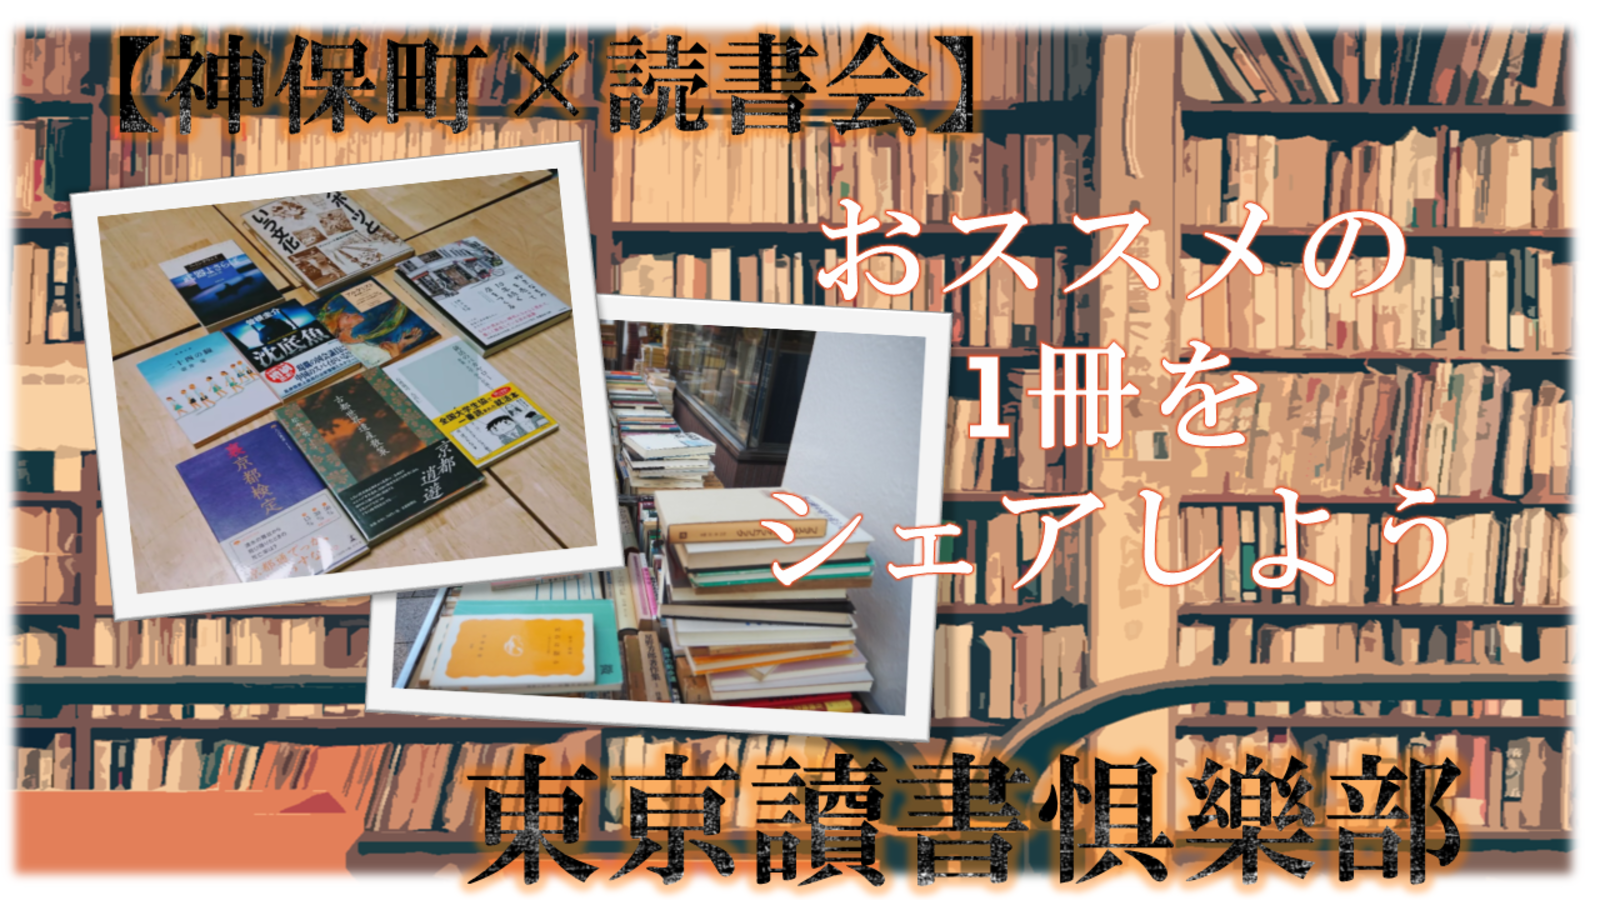 【満員御礼】神田古書店街でオススメの本をシェアしよう。